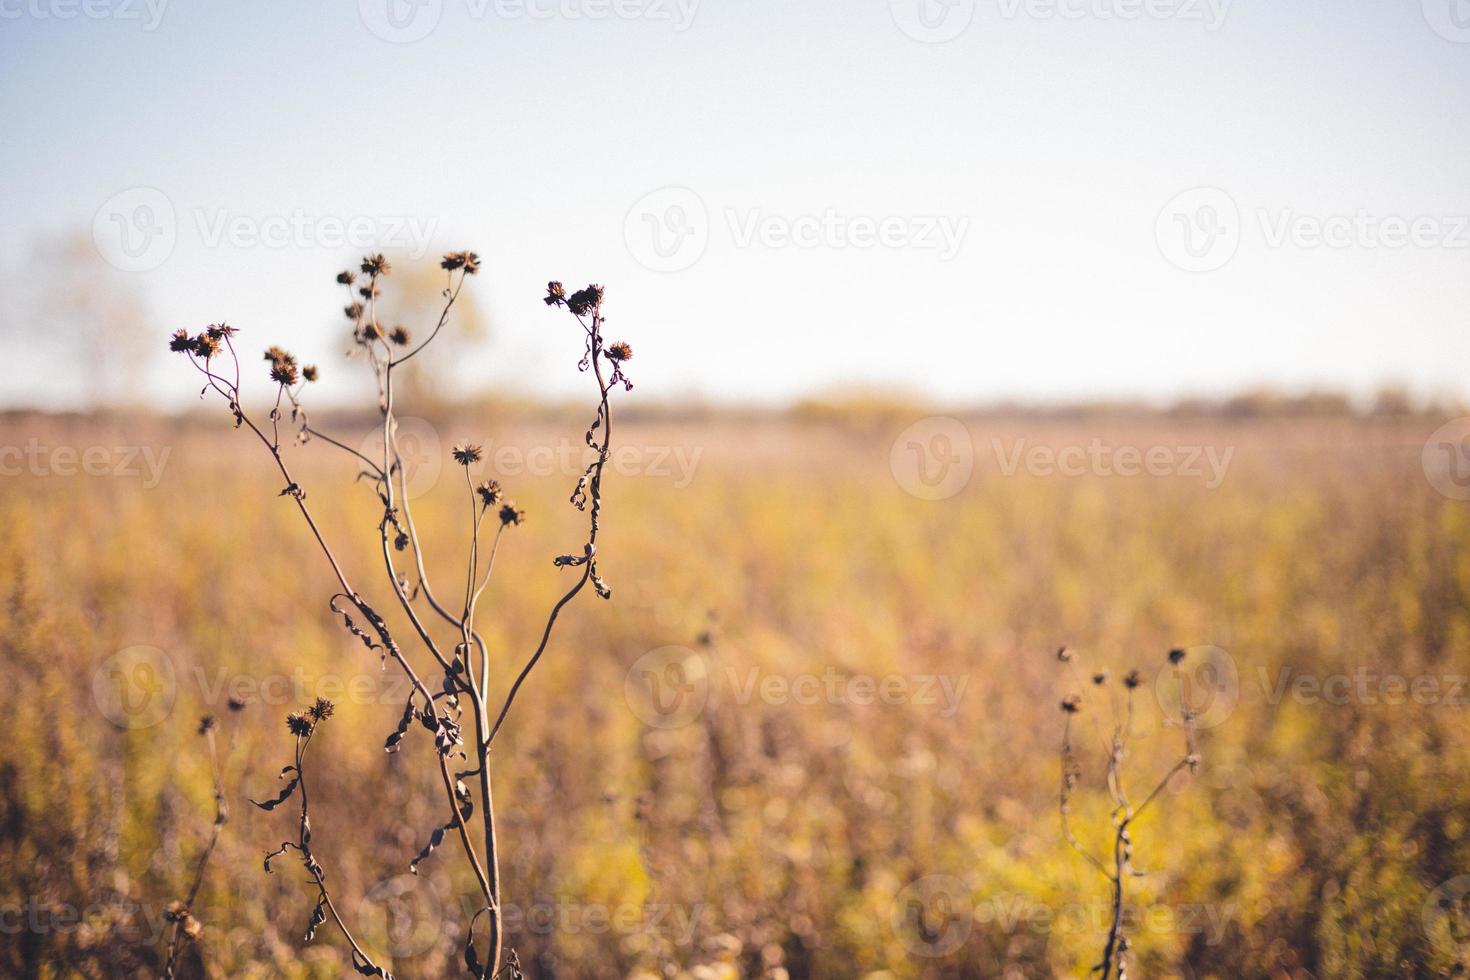 enkele droge planten met zaden er nog aan en pieken boven de wilde herfstgele grassen. blauwe lucht aan de horizon. foto